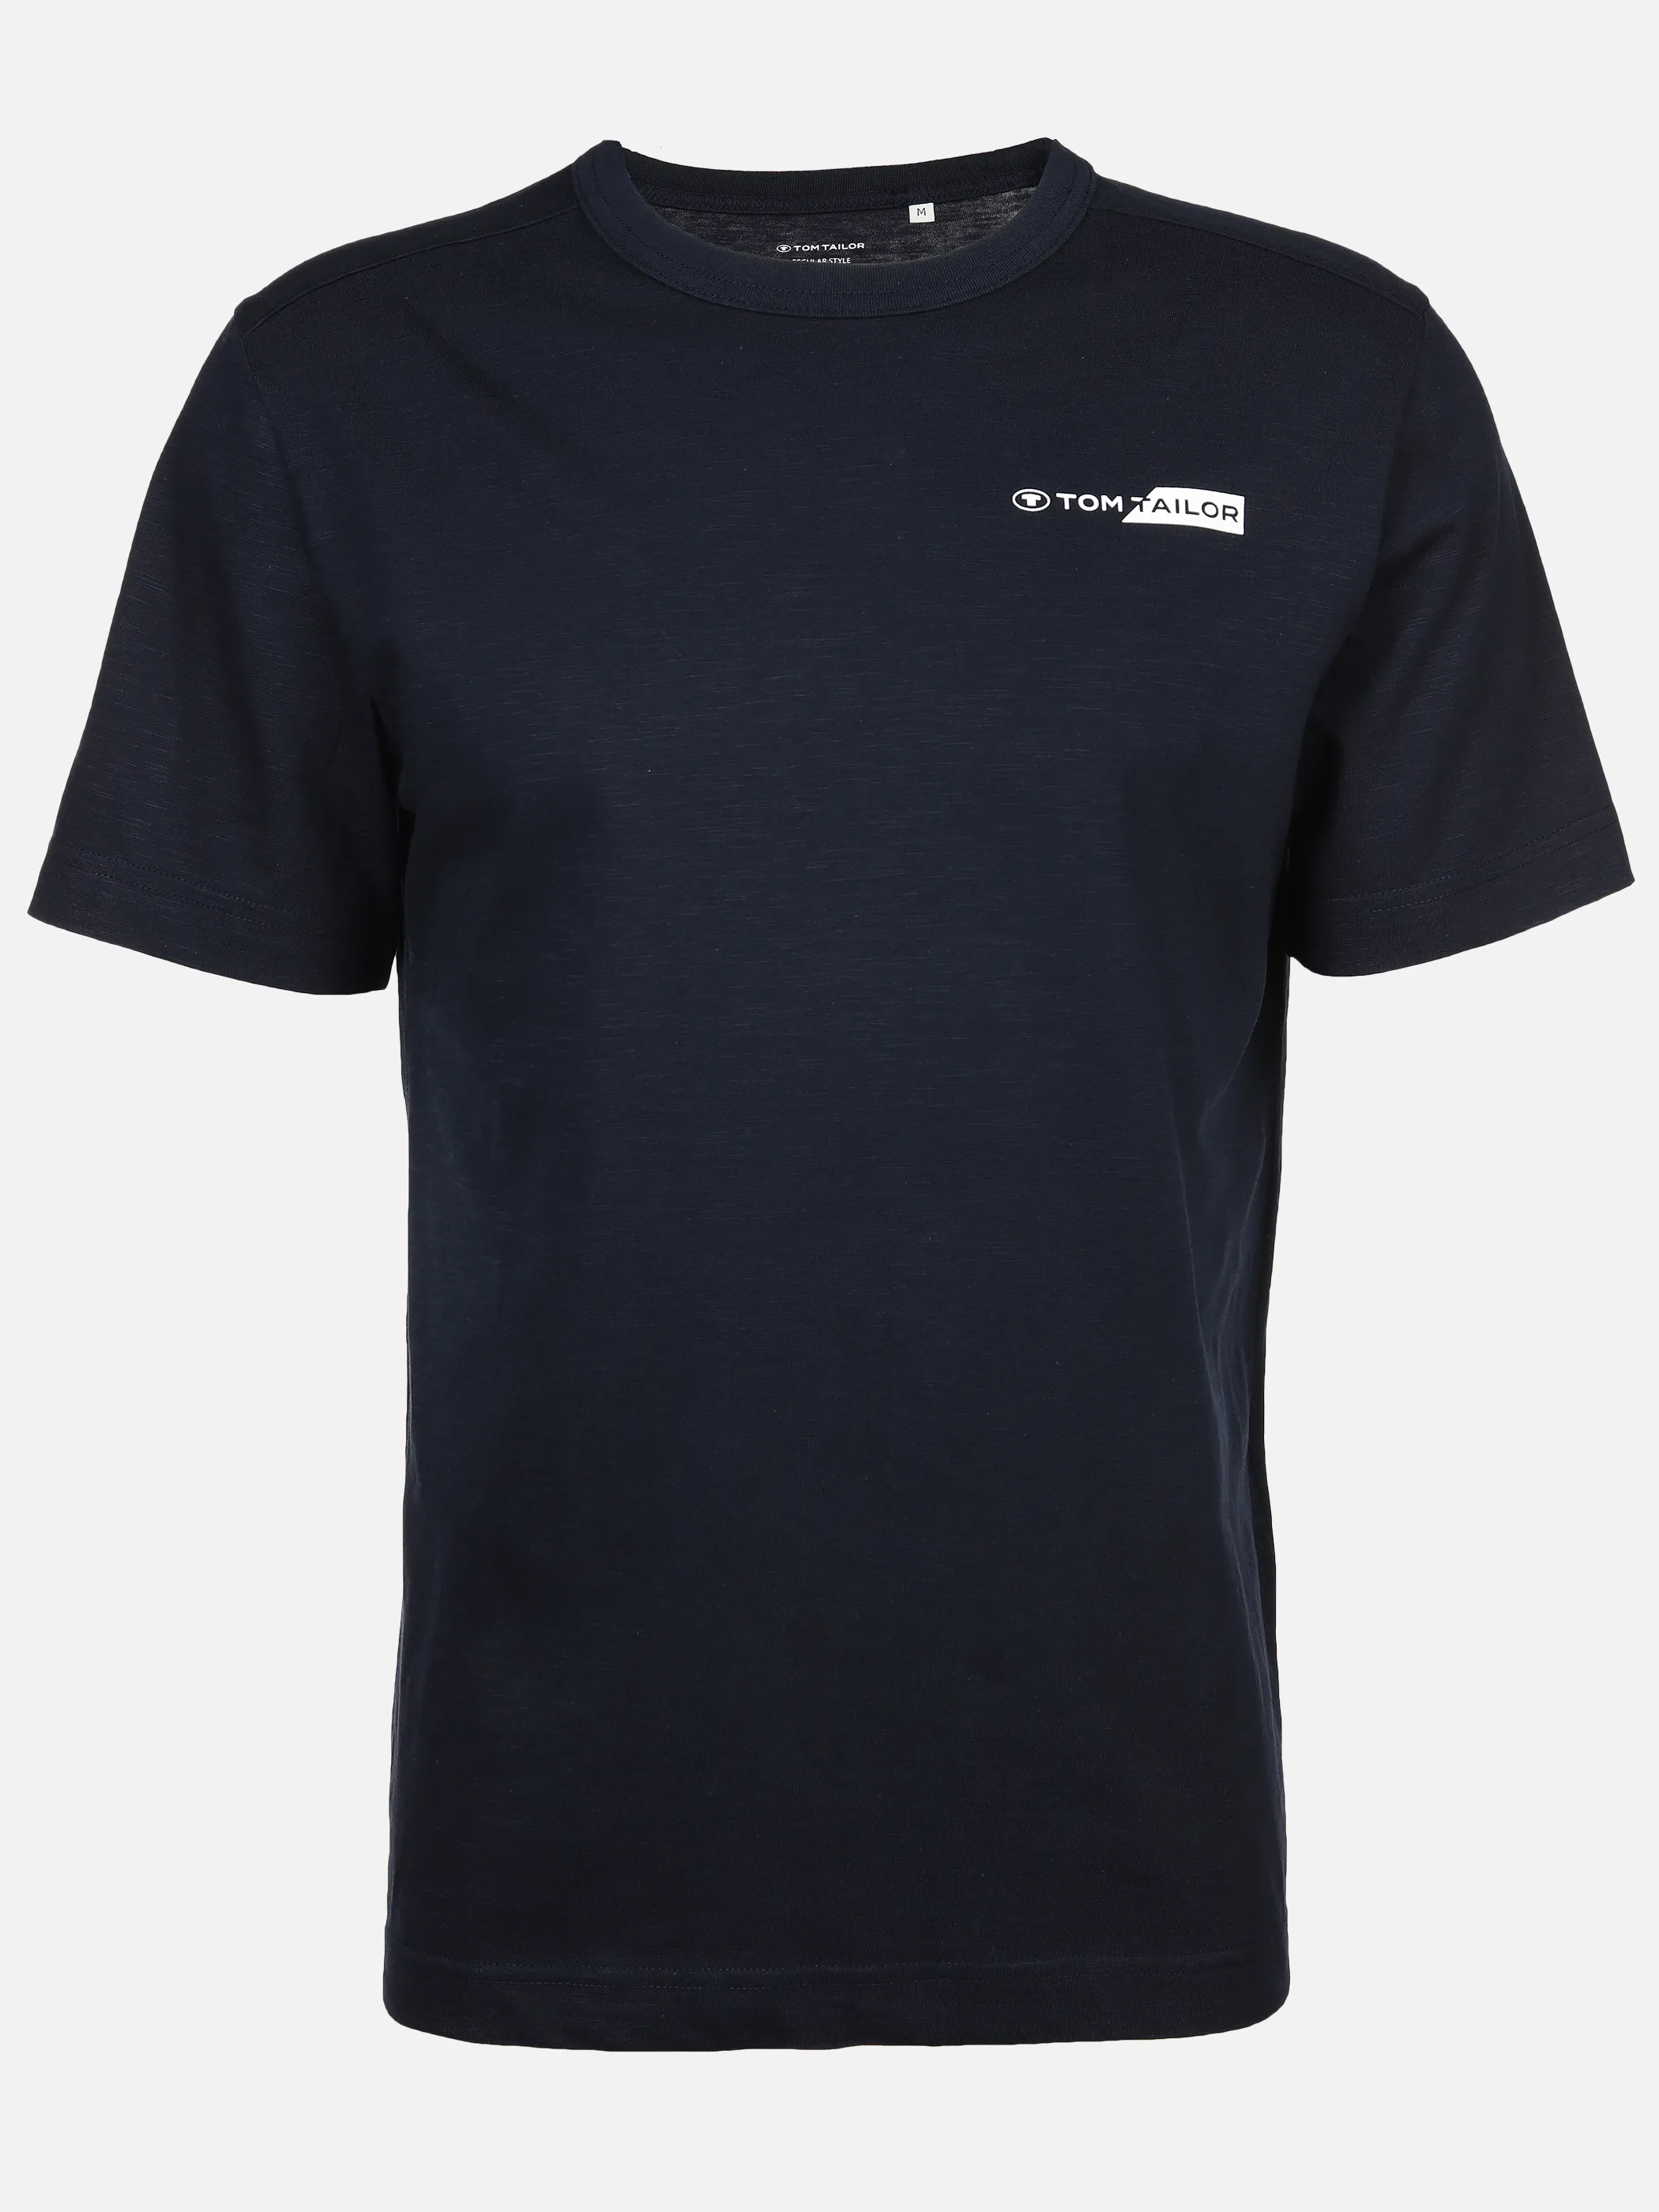 Tom Tailor 1040821 NOS printed t-shirt Logo Blau 890933 10668 1